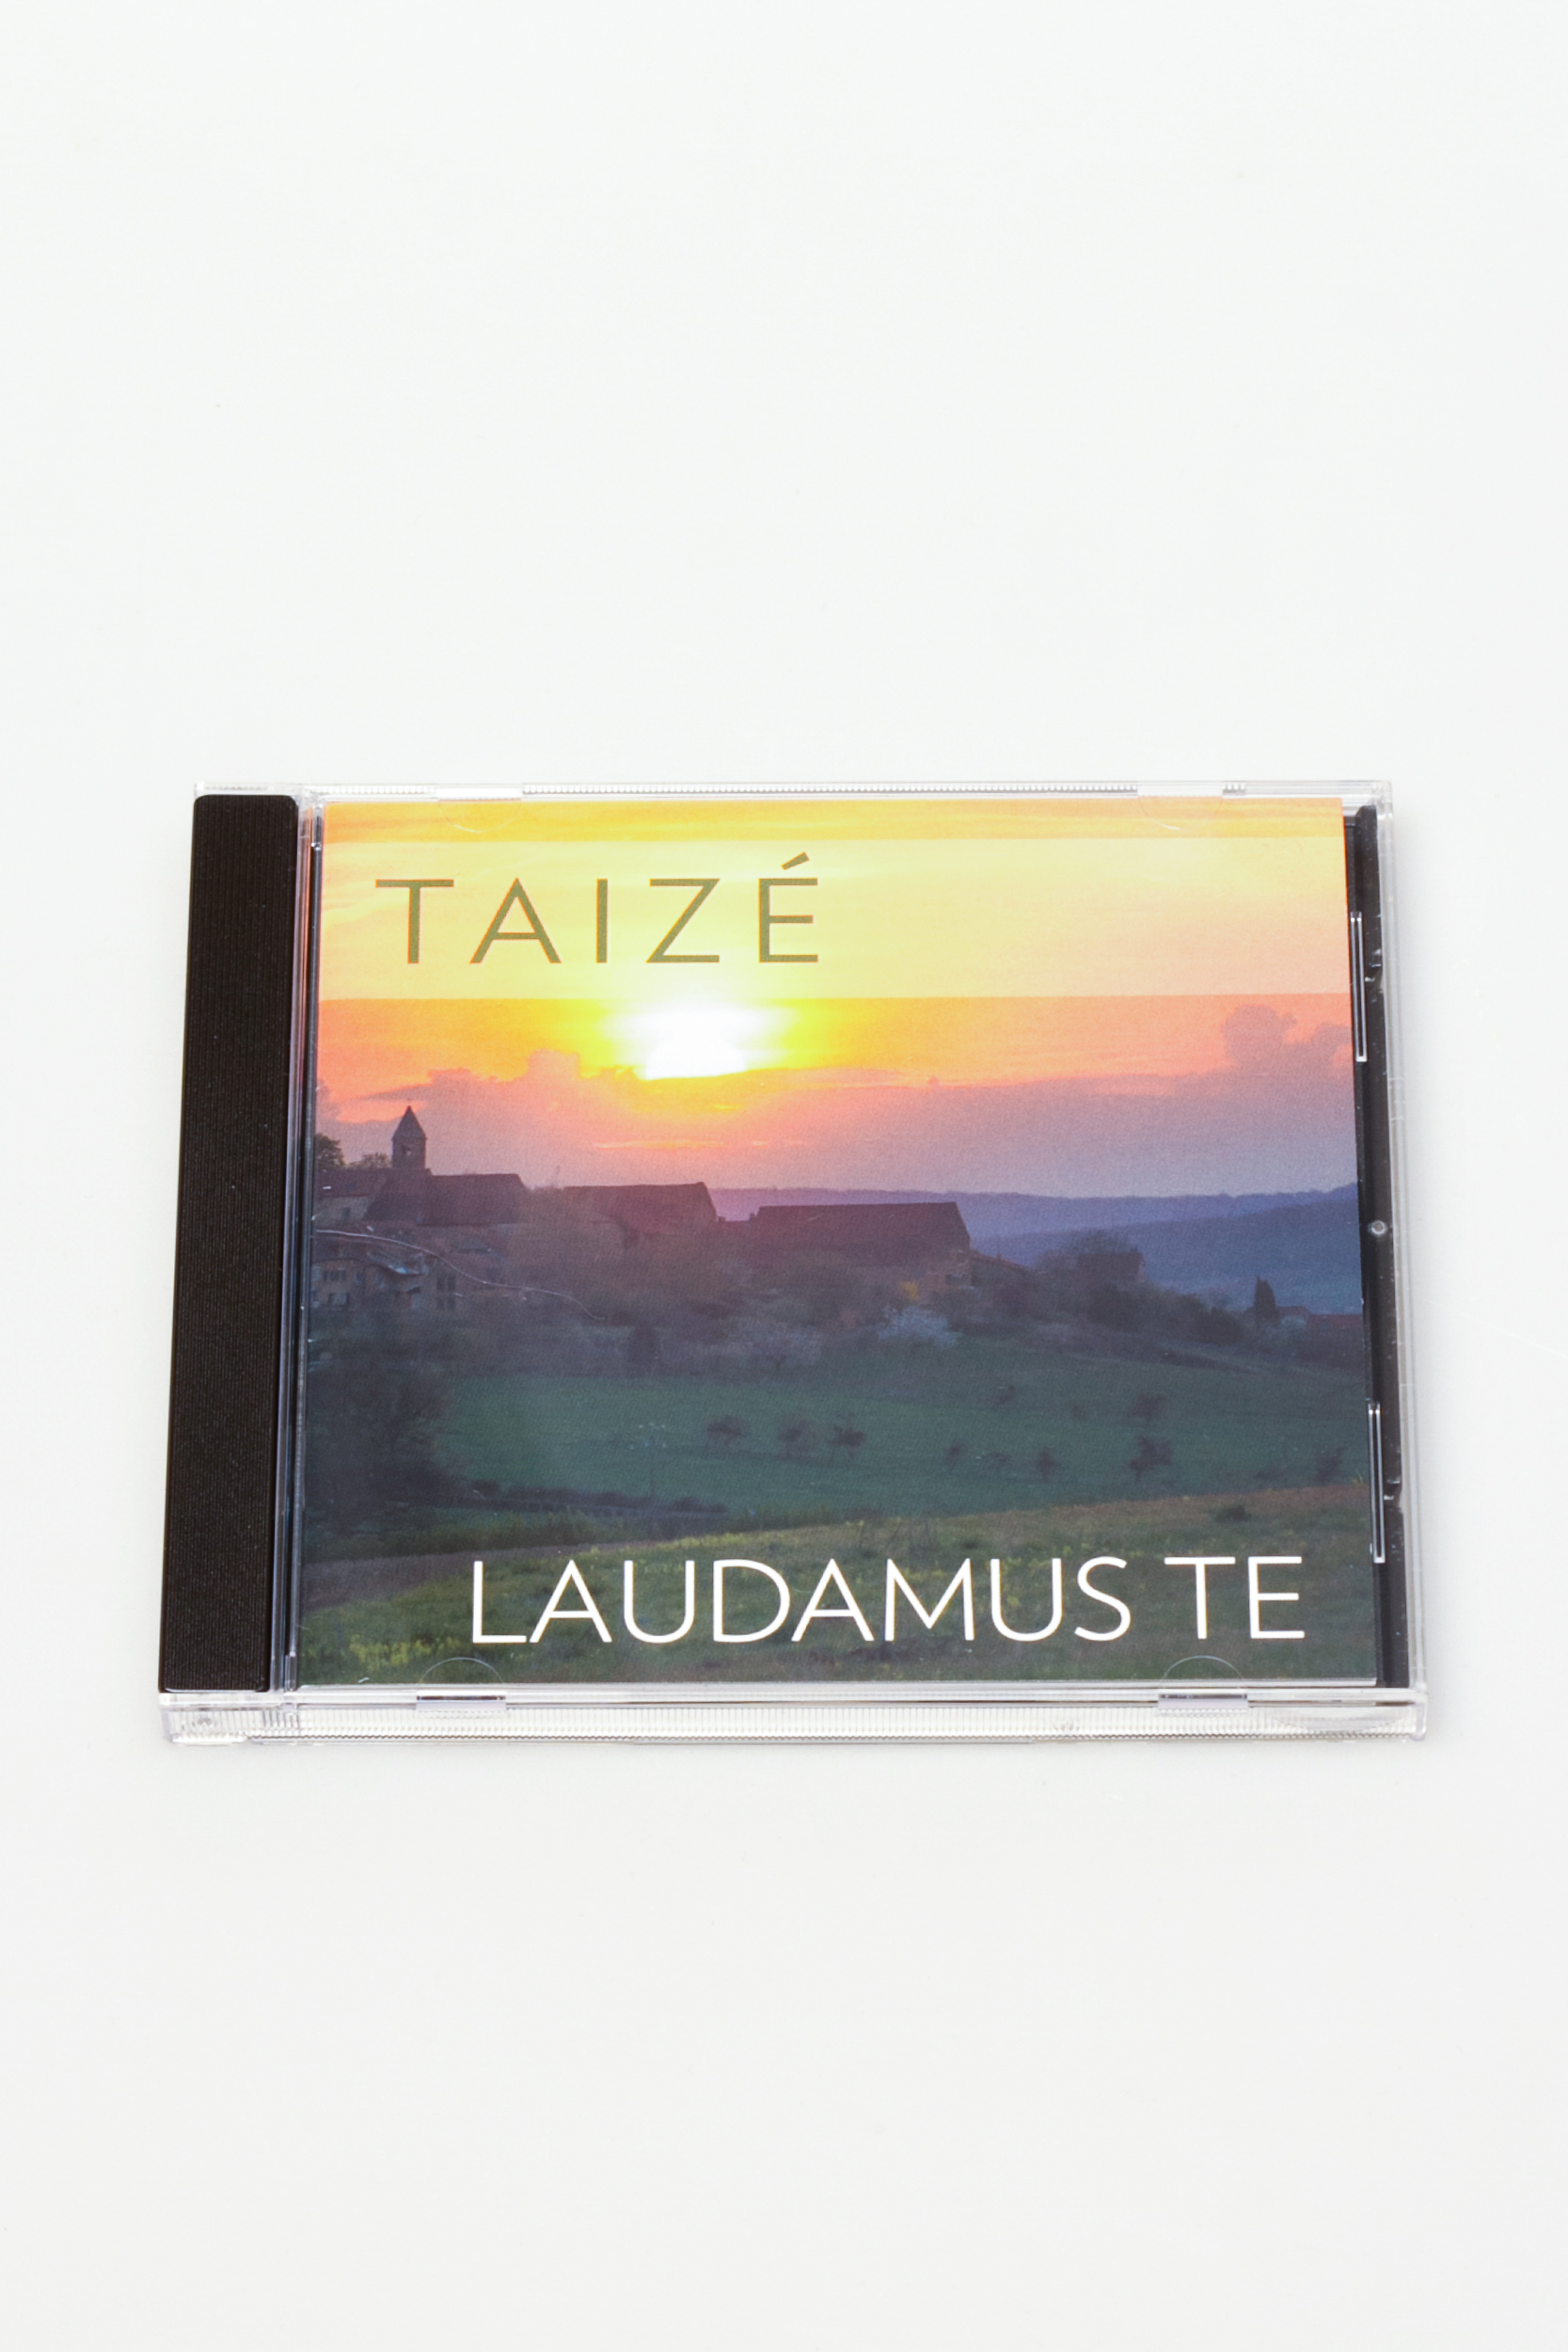 CD - Taize Laudamus te